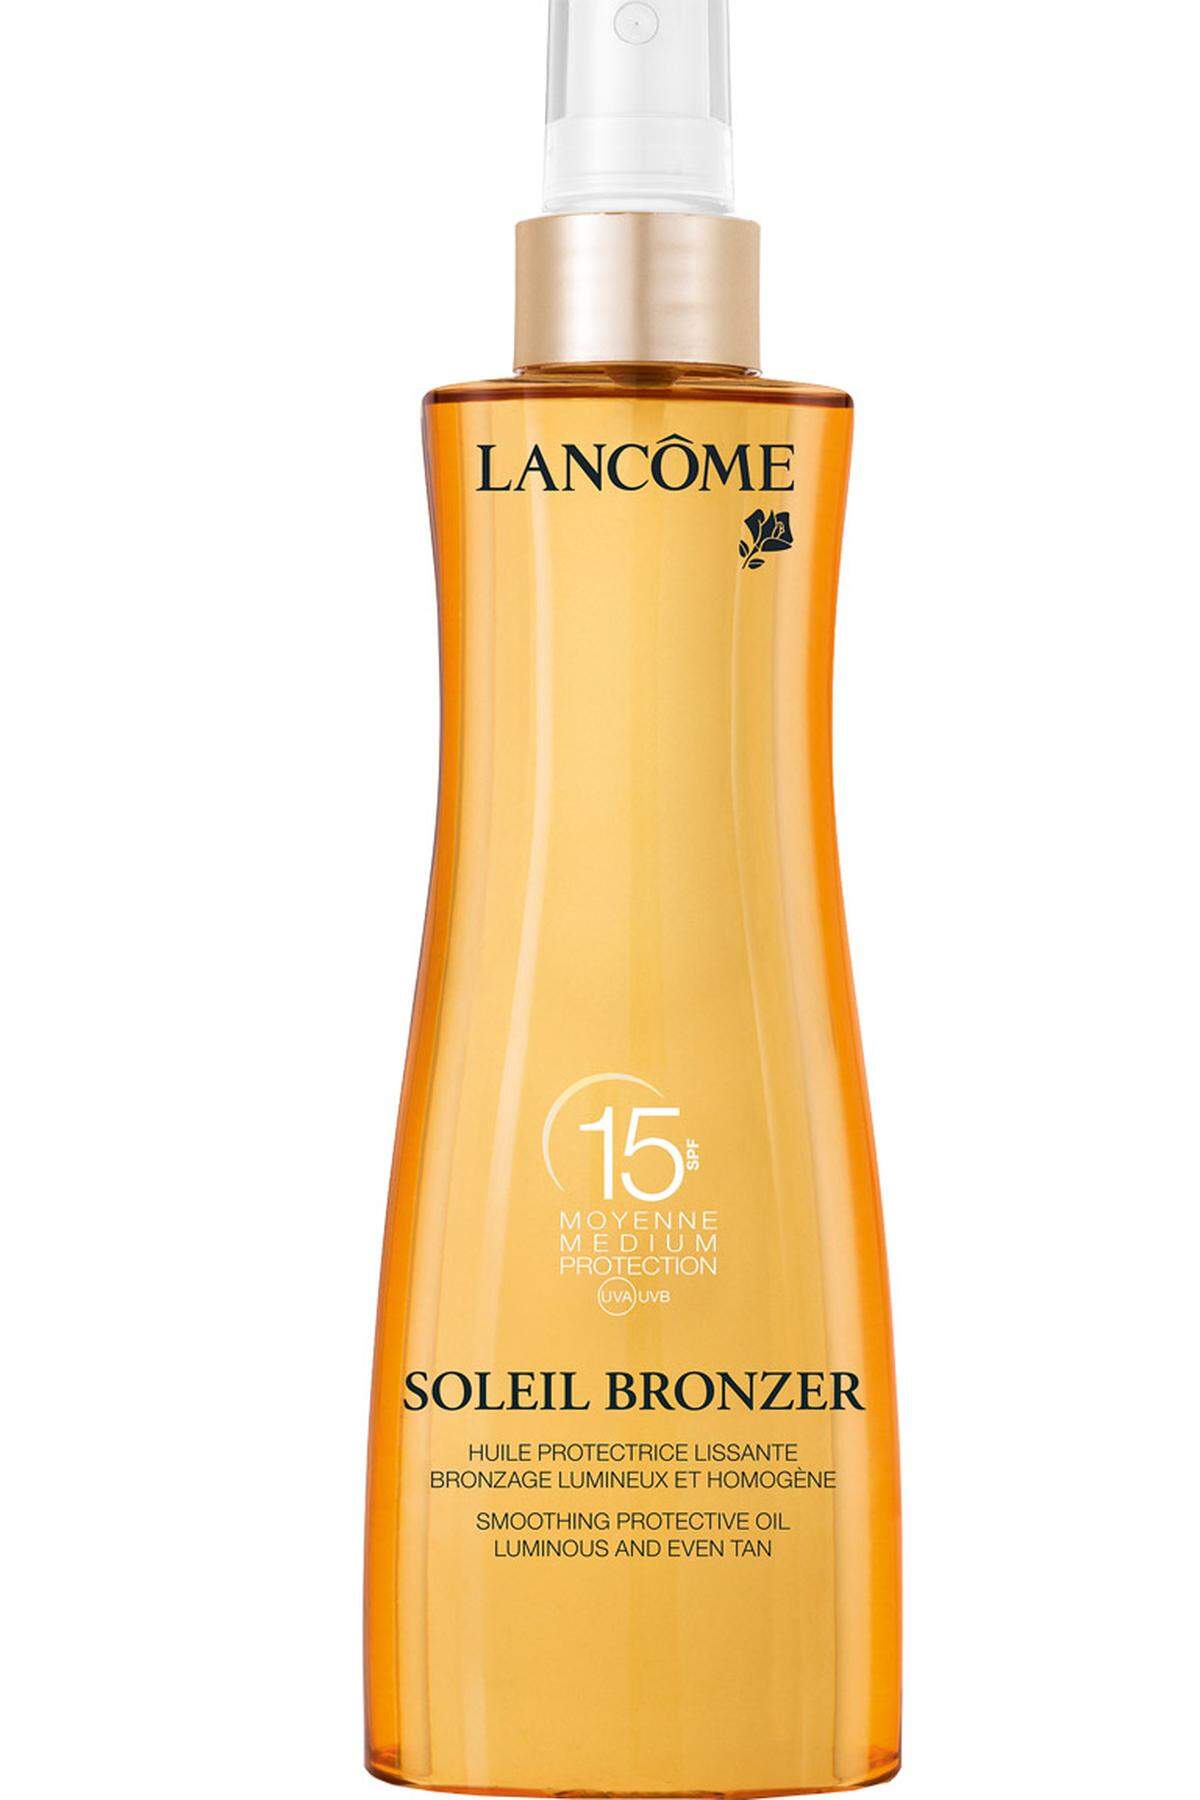 ... aus der „Soleil Bronzer“-Serie von Lancôme, LSF 15 um 35 Euro.